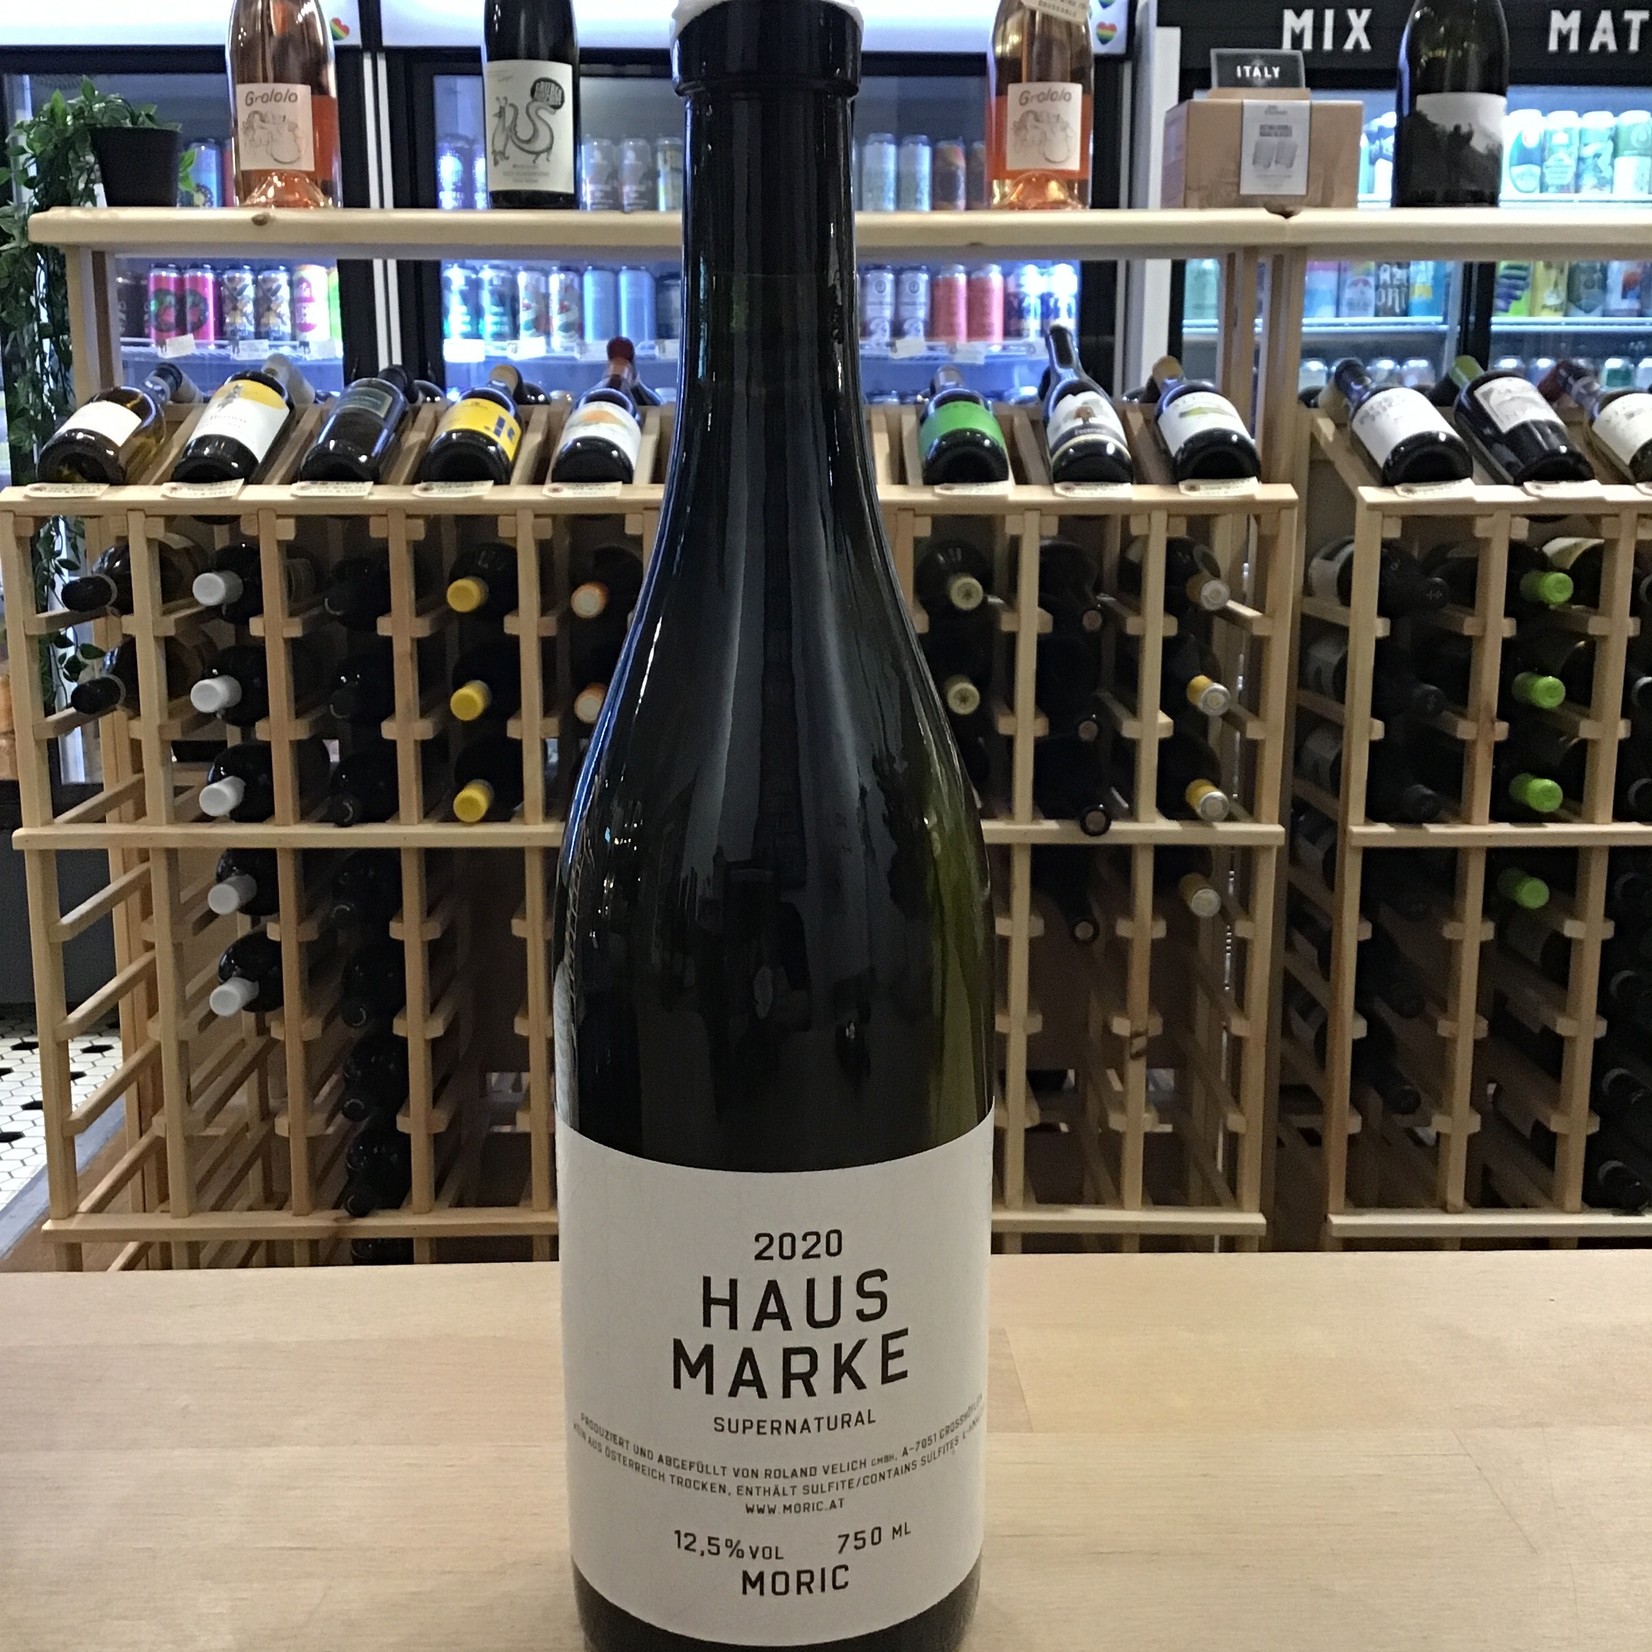 Moric, 'Haus Marke Weiss' Chardonnay/Gruner Veltliner 750ml 12.5%